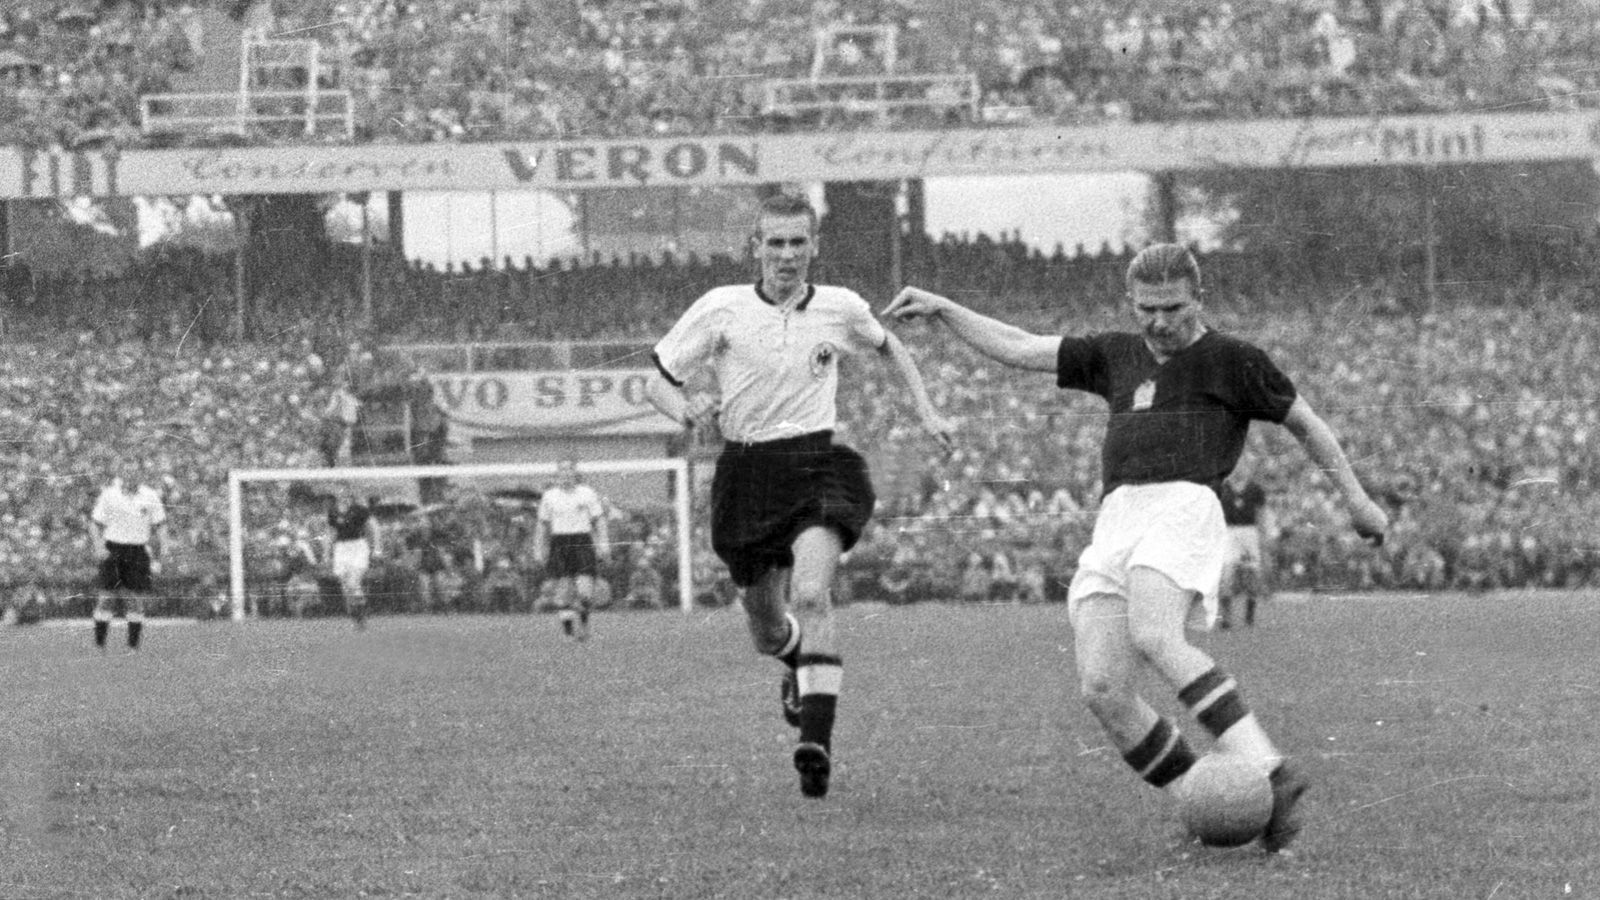 
                <strong>Ungarn war im WM-Finale 1954 haushoher Favorit</strong><br>
                Die Ungarn galten damals als beste Mannschaft der Welt, auch angesichts des 3:8 im Gruppenspiel wenige Tage zuvor, war Deutschland krasser Außenseiter, als sich die beiden Mannschaften im Finale der WM 1954 wiedertrafen. Und tatsächlich führte Ungarn schon nach acht Minuten mit 2:0, das Spiel schien den erwarteten Verlauf zu nehmen. Hier zieht Ferenc Puskas (r.) vor Horst Eckel ab.
              